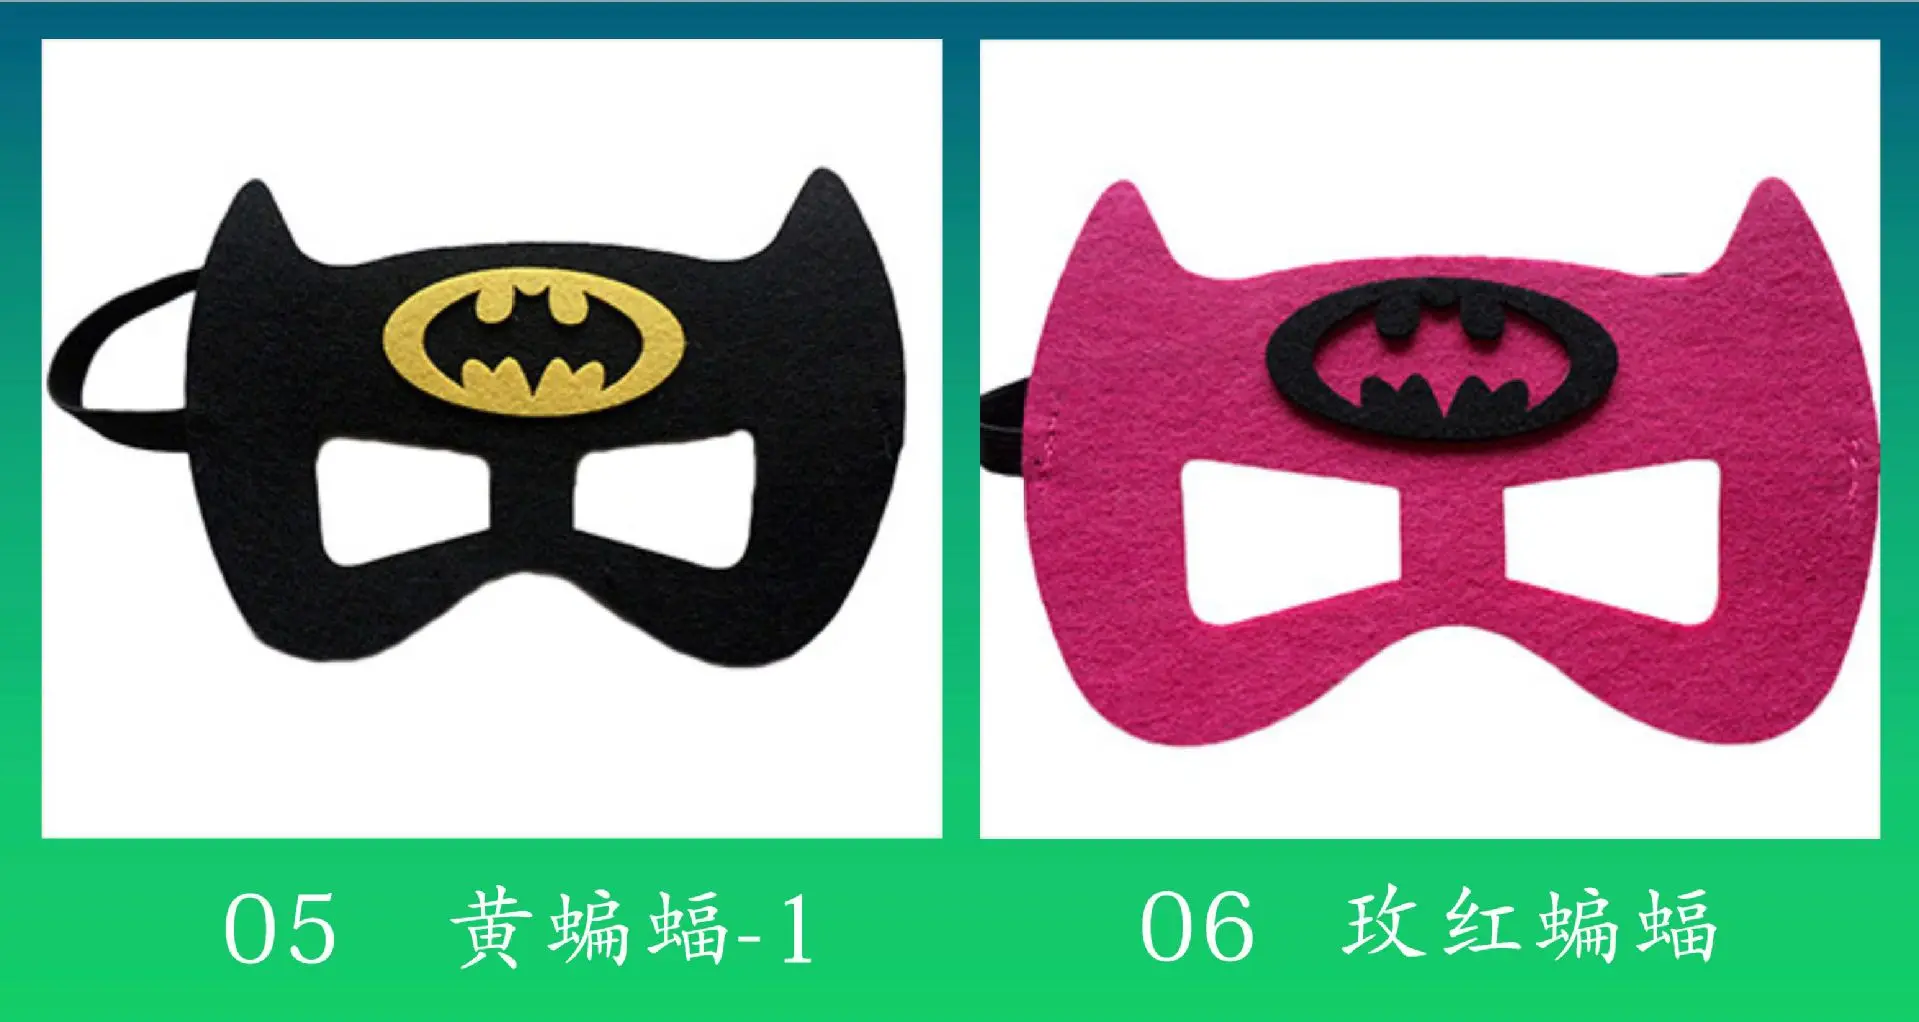 2 шт. маски супергероев Рождество Хэллоуин маскарад маски предметы для вечеринок день рождения украшения для детской вечеринки